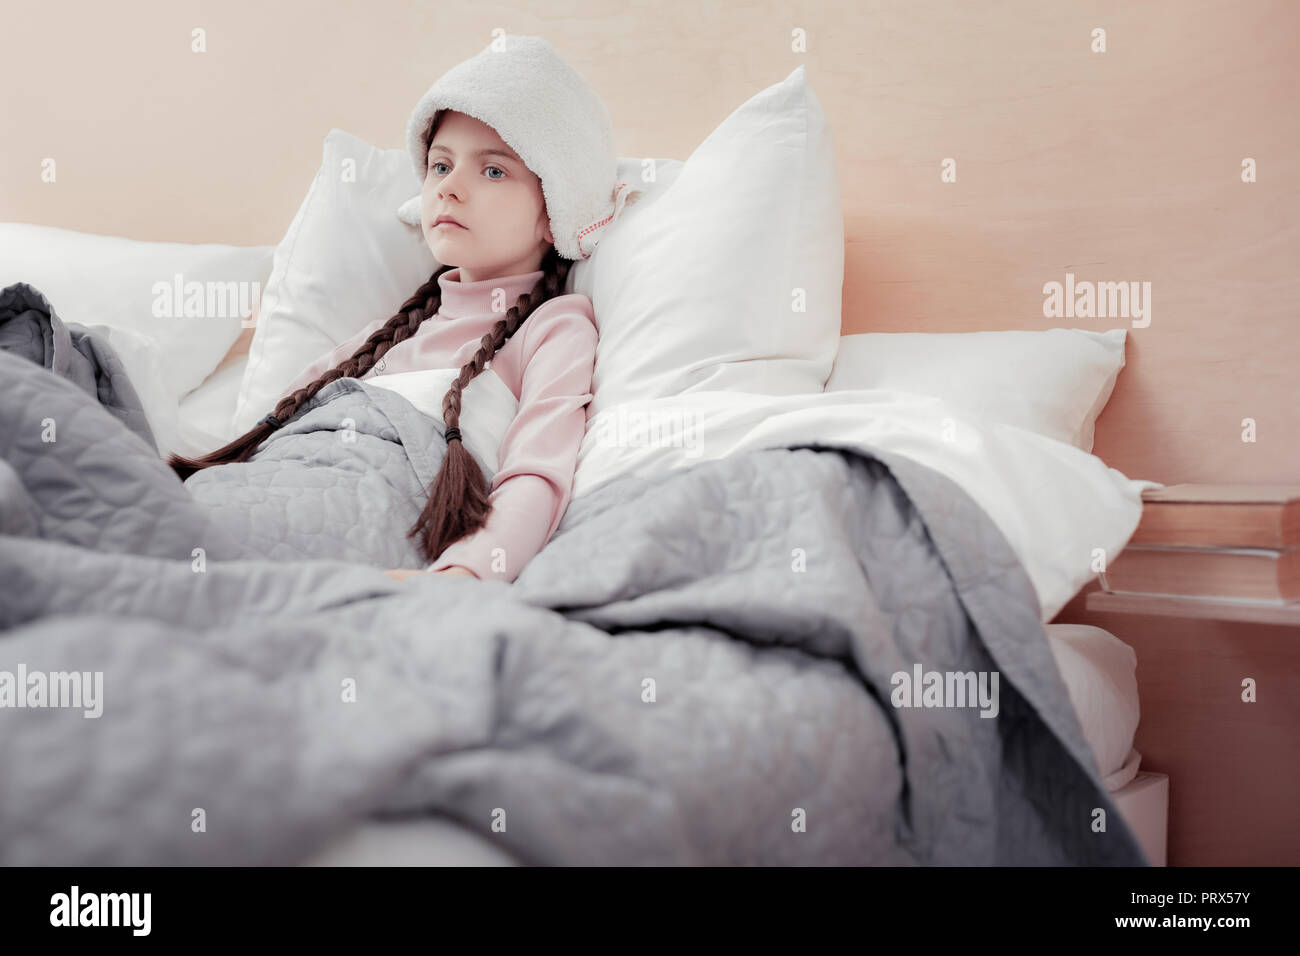 Malati emotionless ragazza distesa a letto Foto Stock